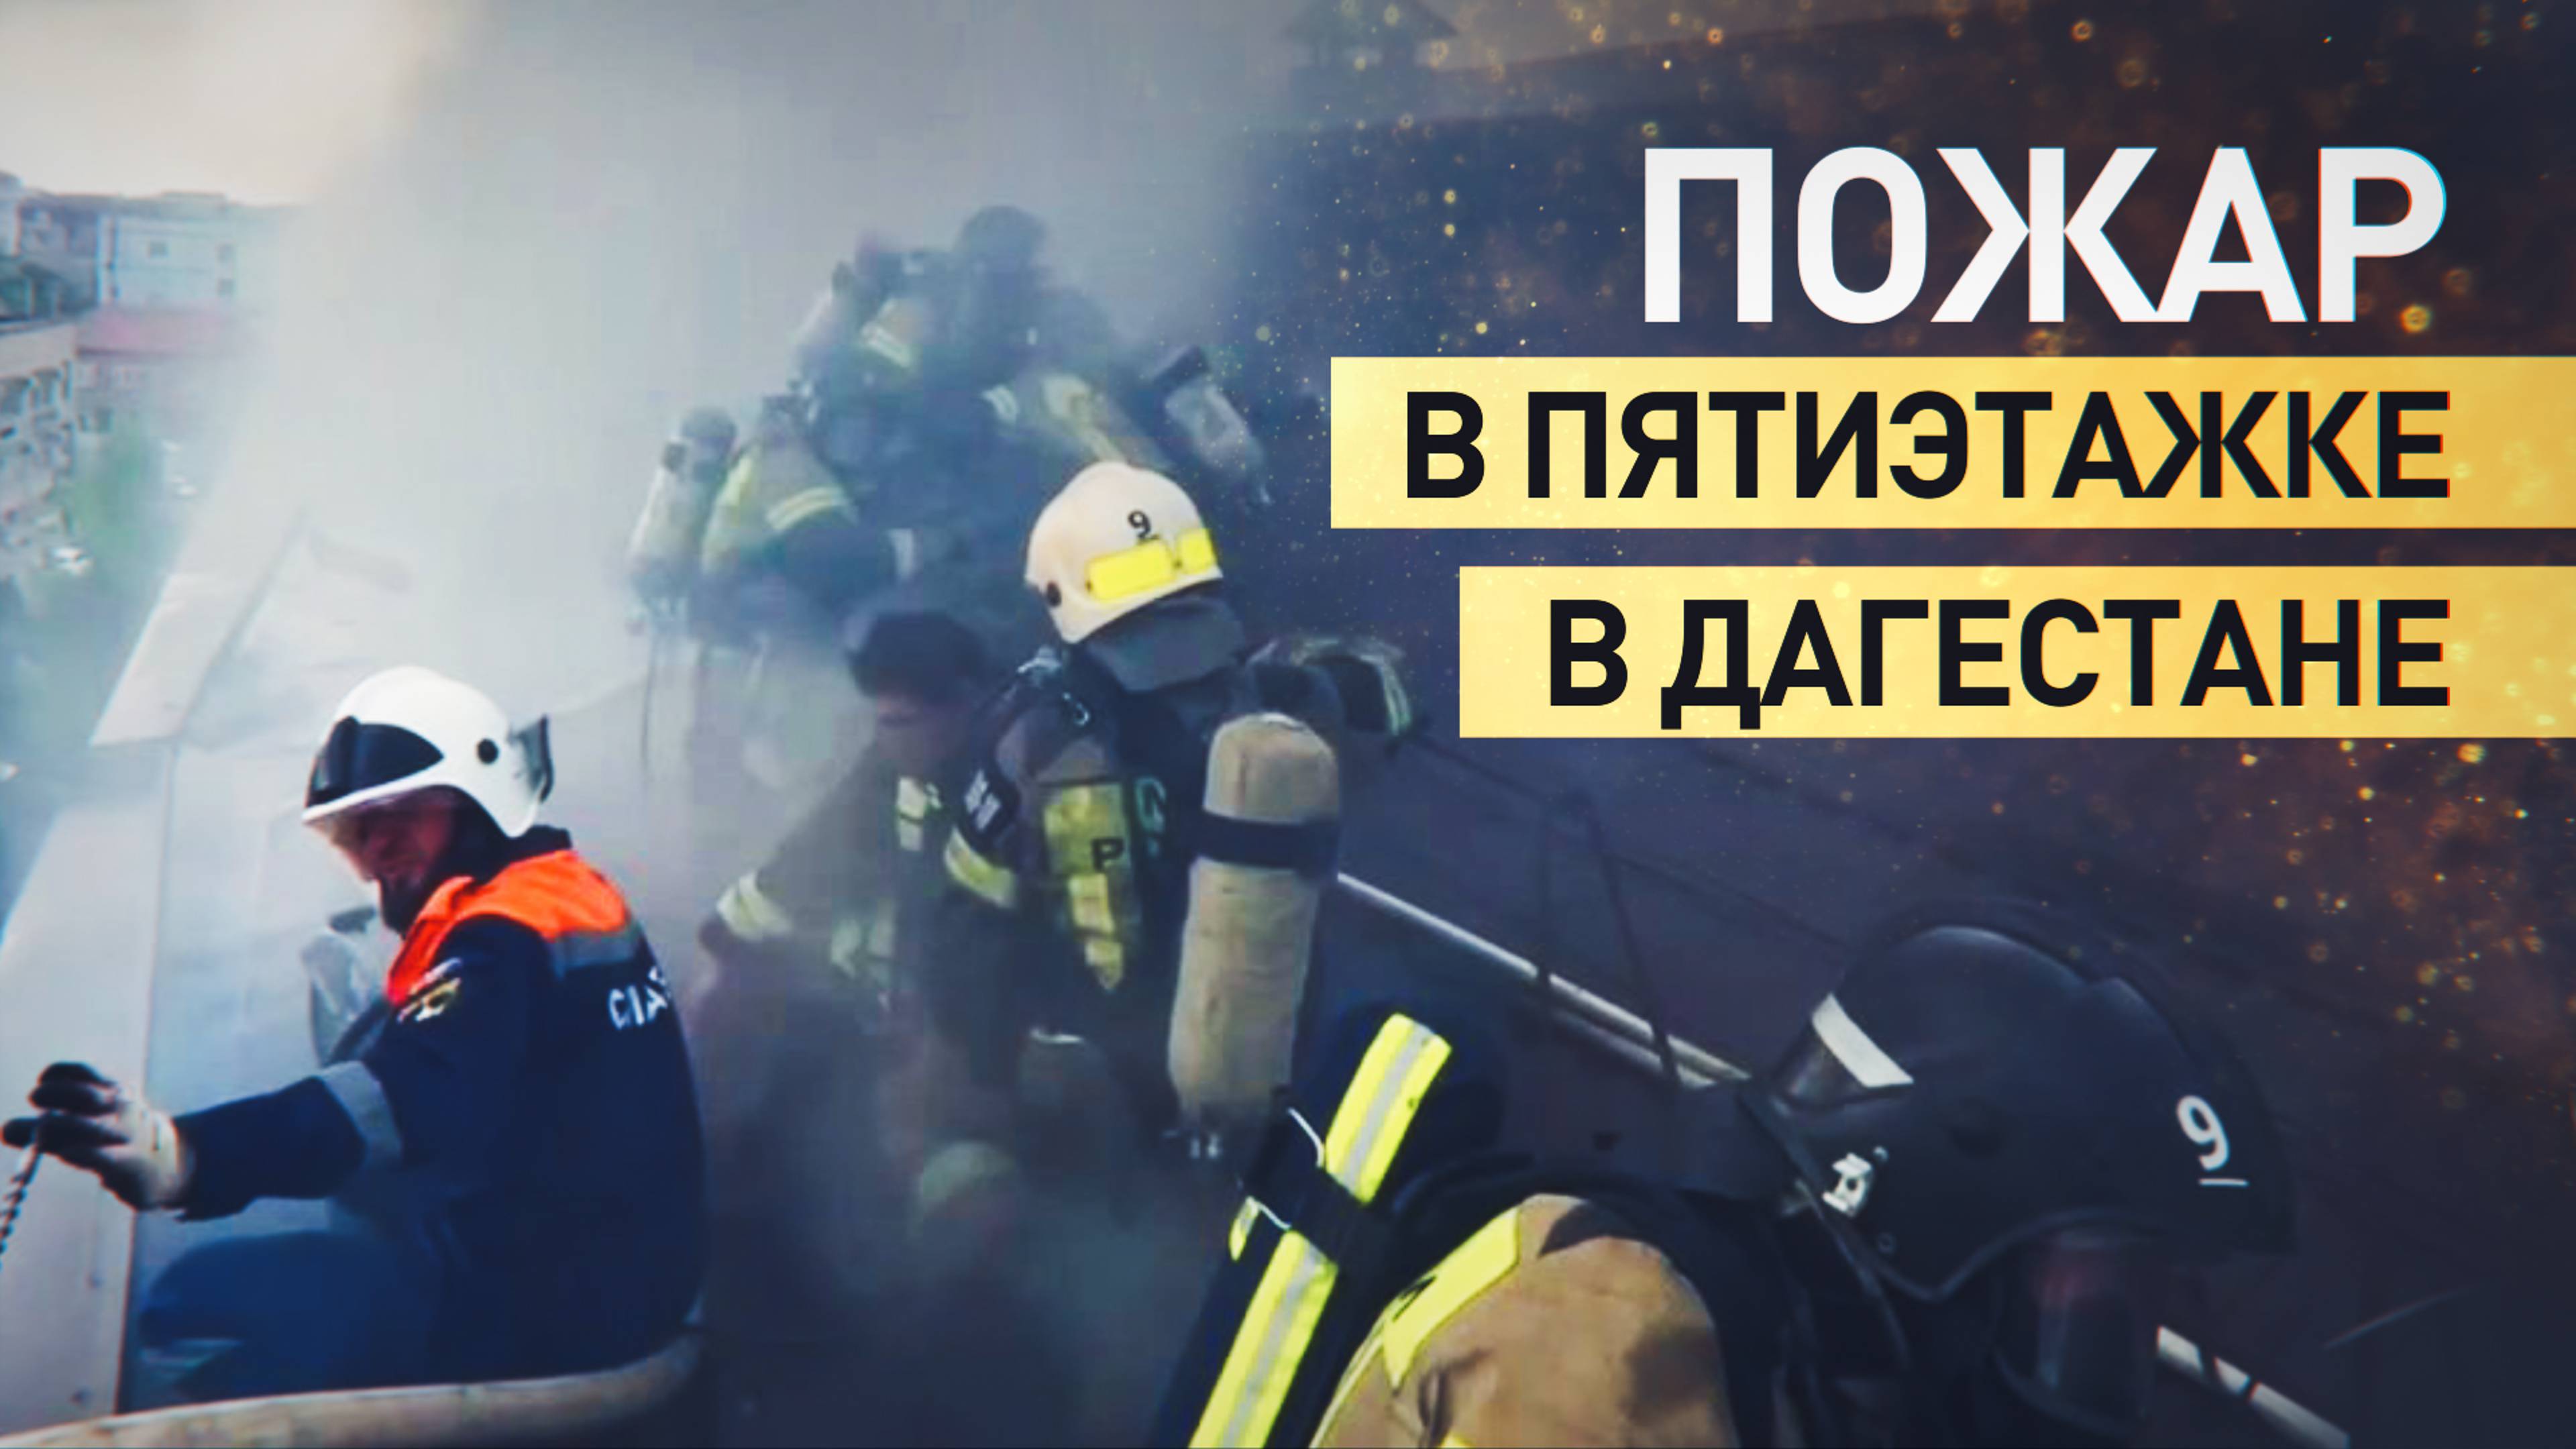 В Дагестане ликвидировали пожар в многоквартирном доме — видео